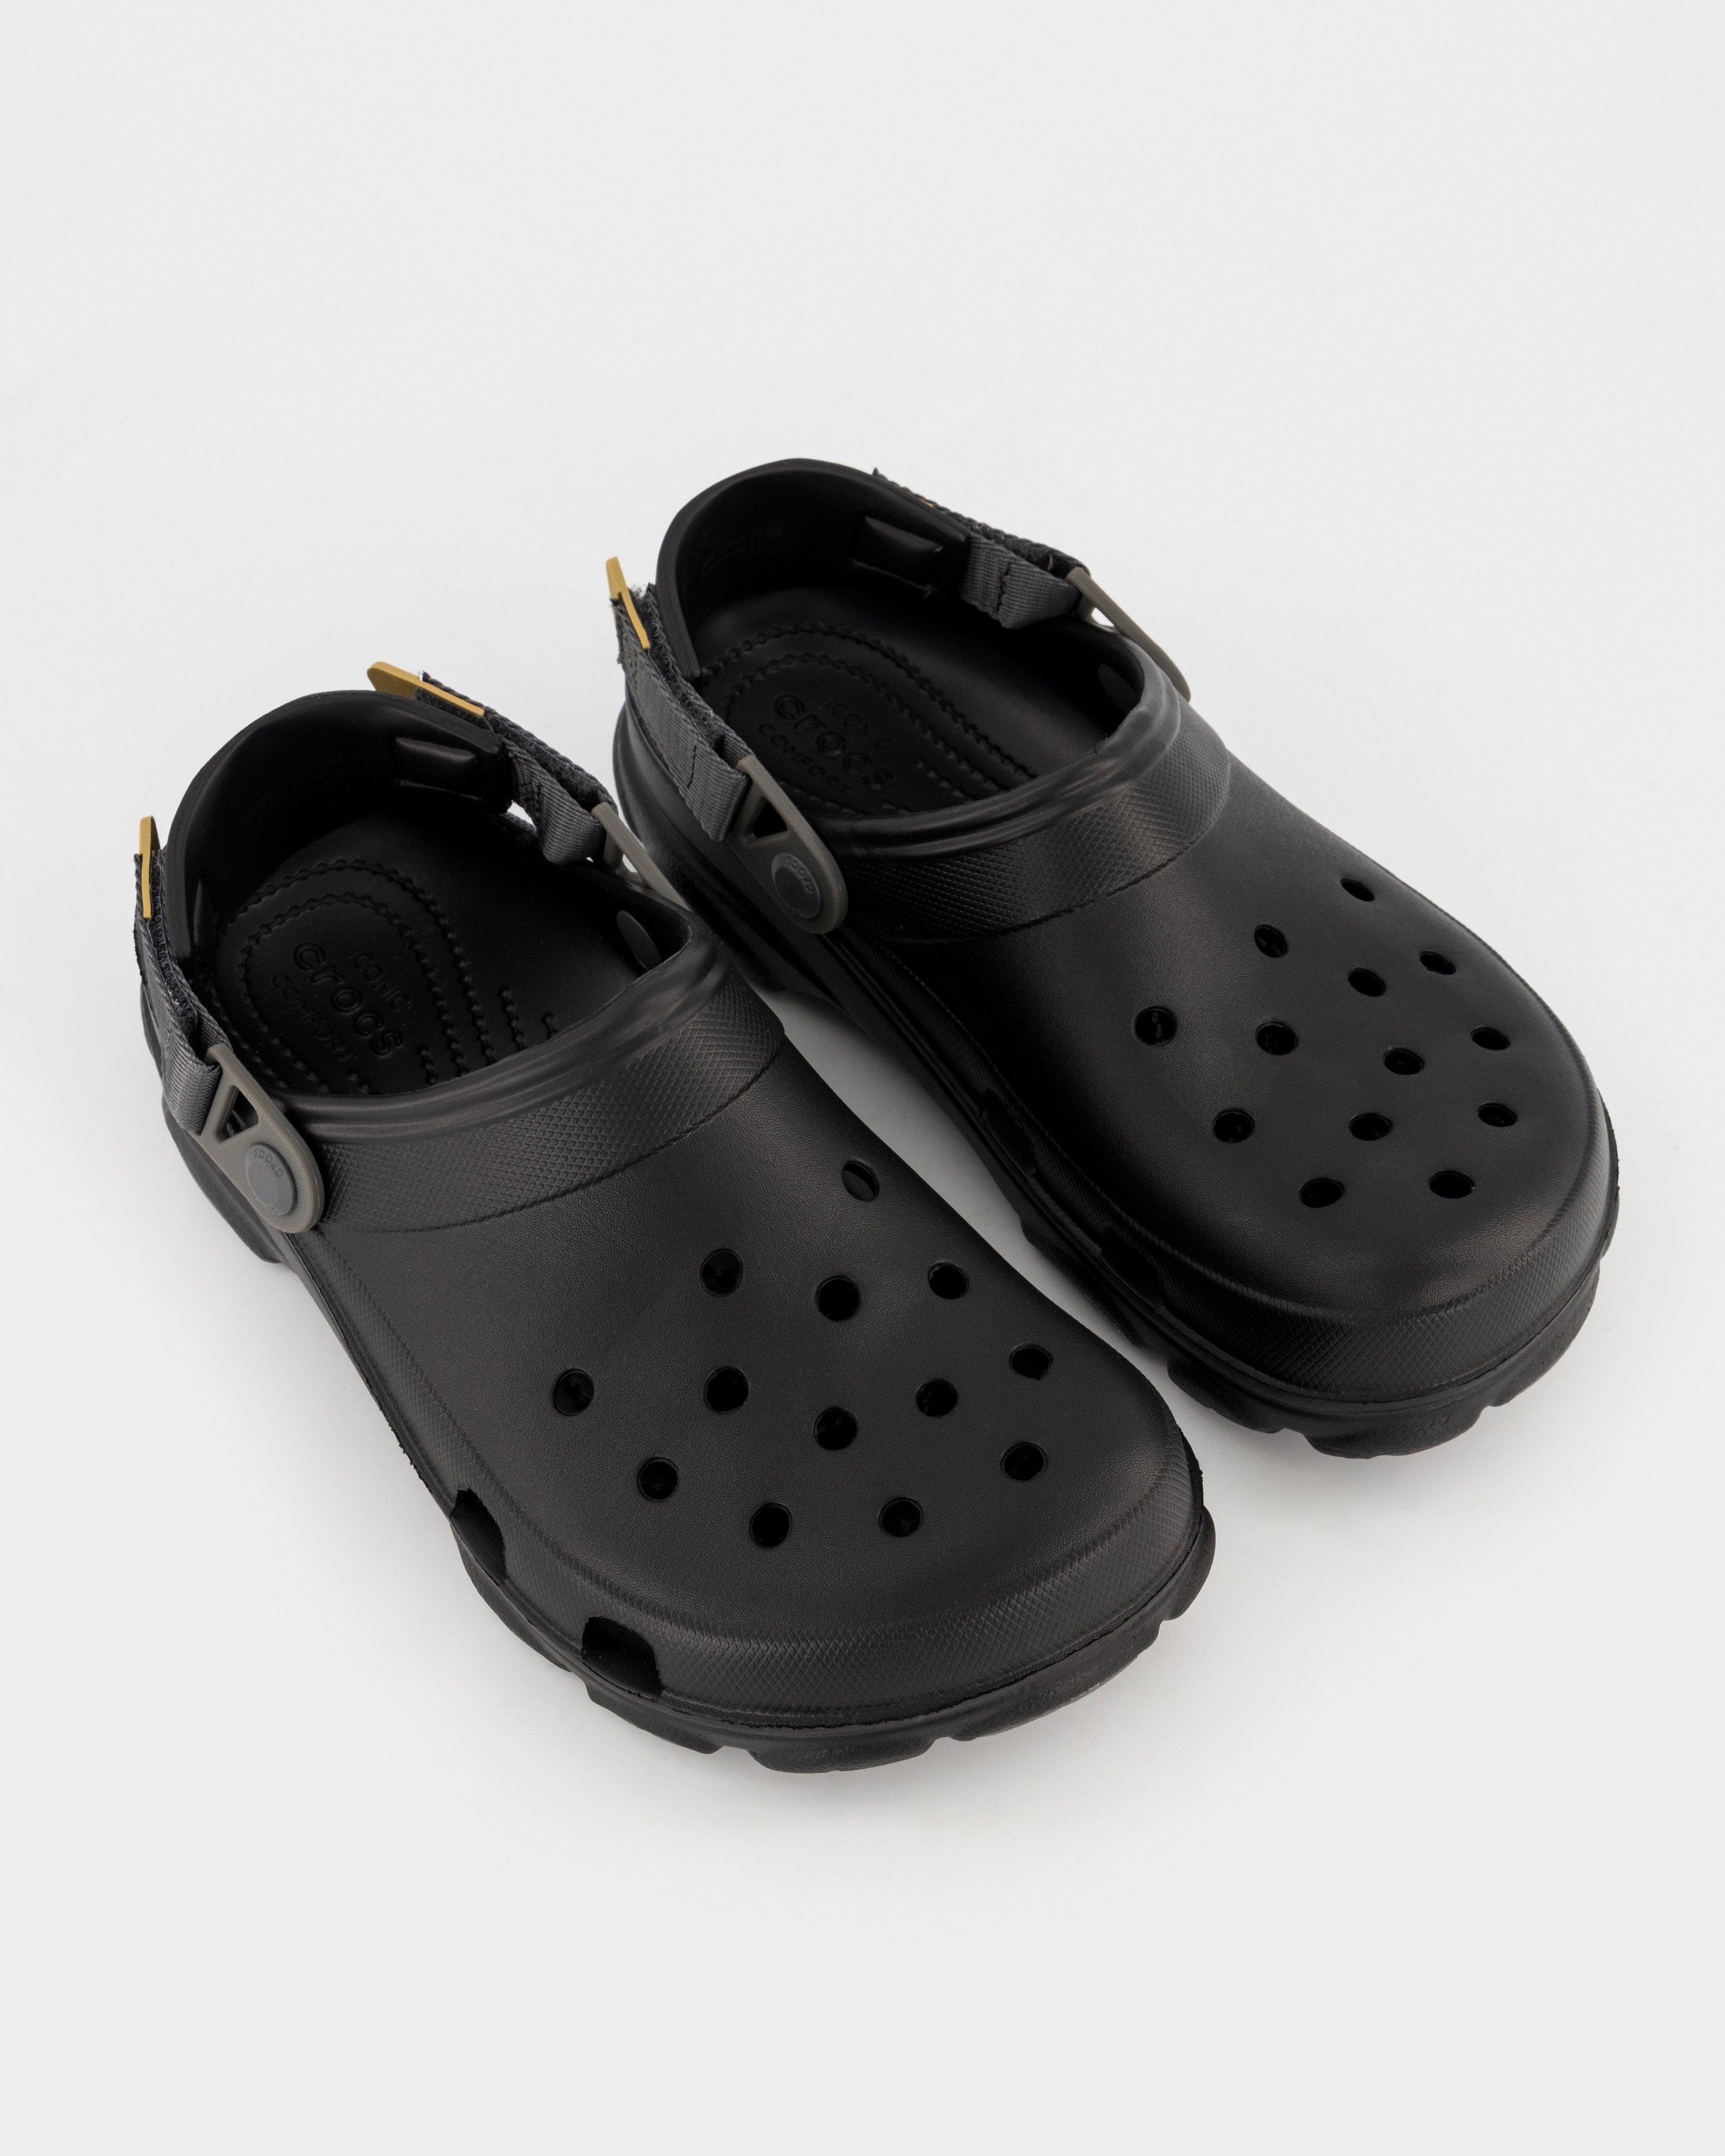 Crocs Classic All-Terrain Clog Black